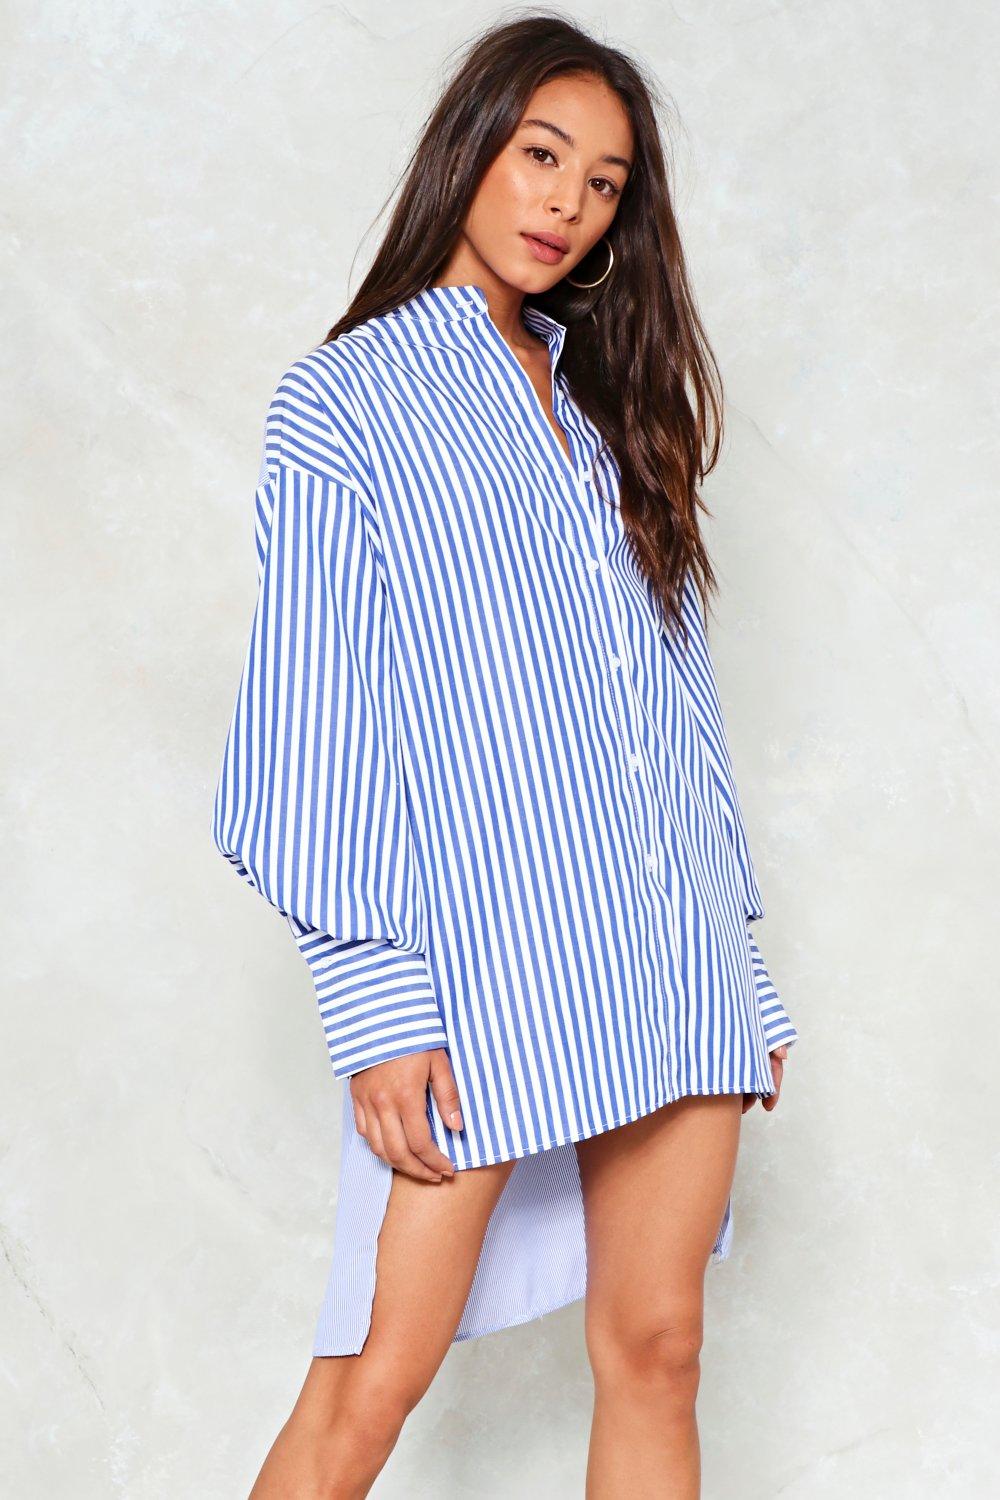 blue striped shirt dress